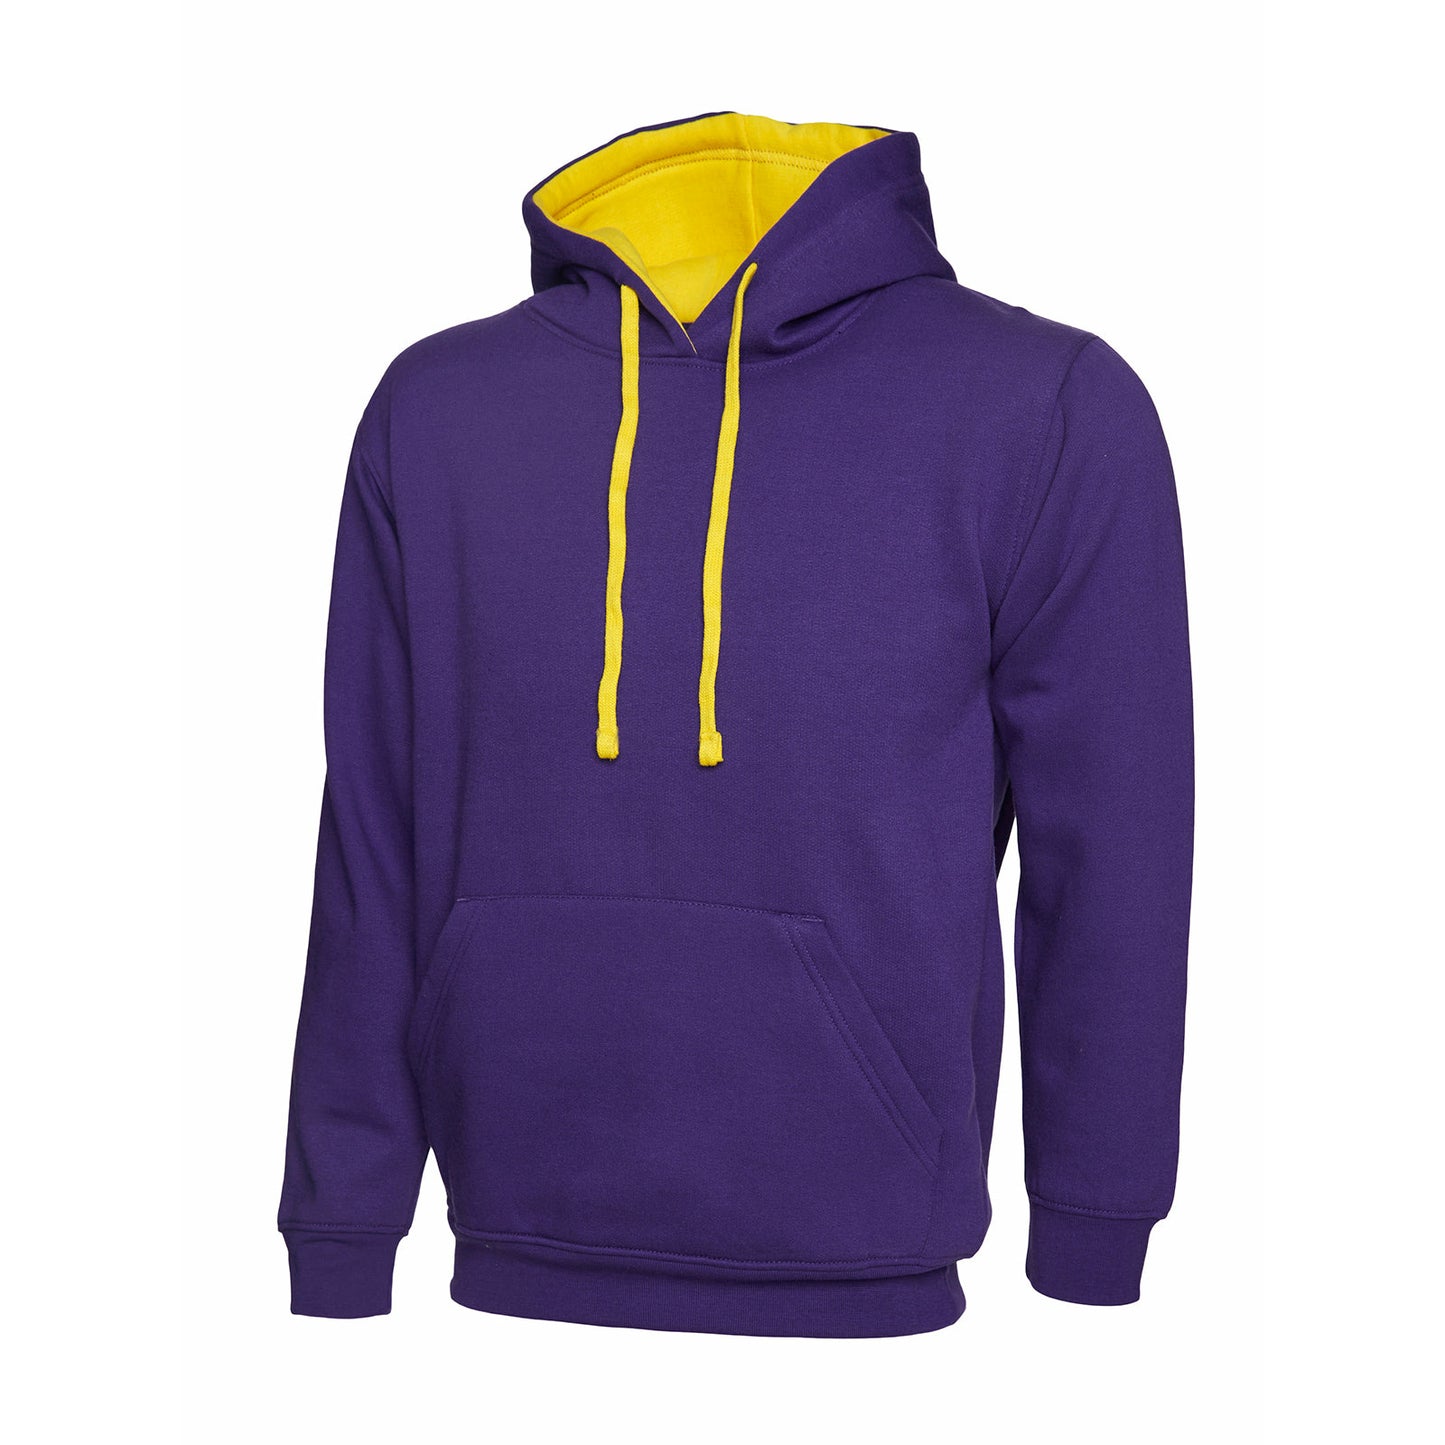 Contrast Hooded Sweatshirt Purple/Yellow